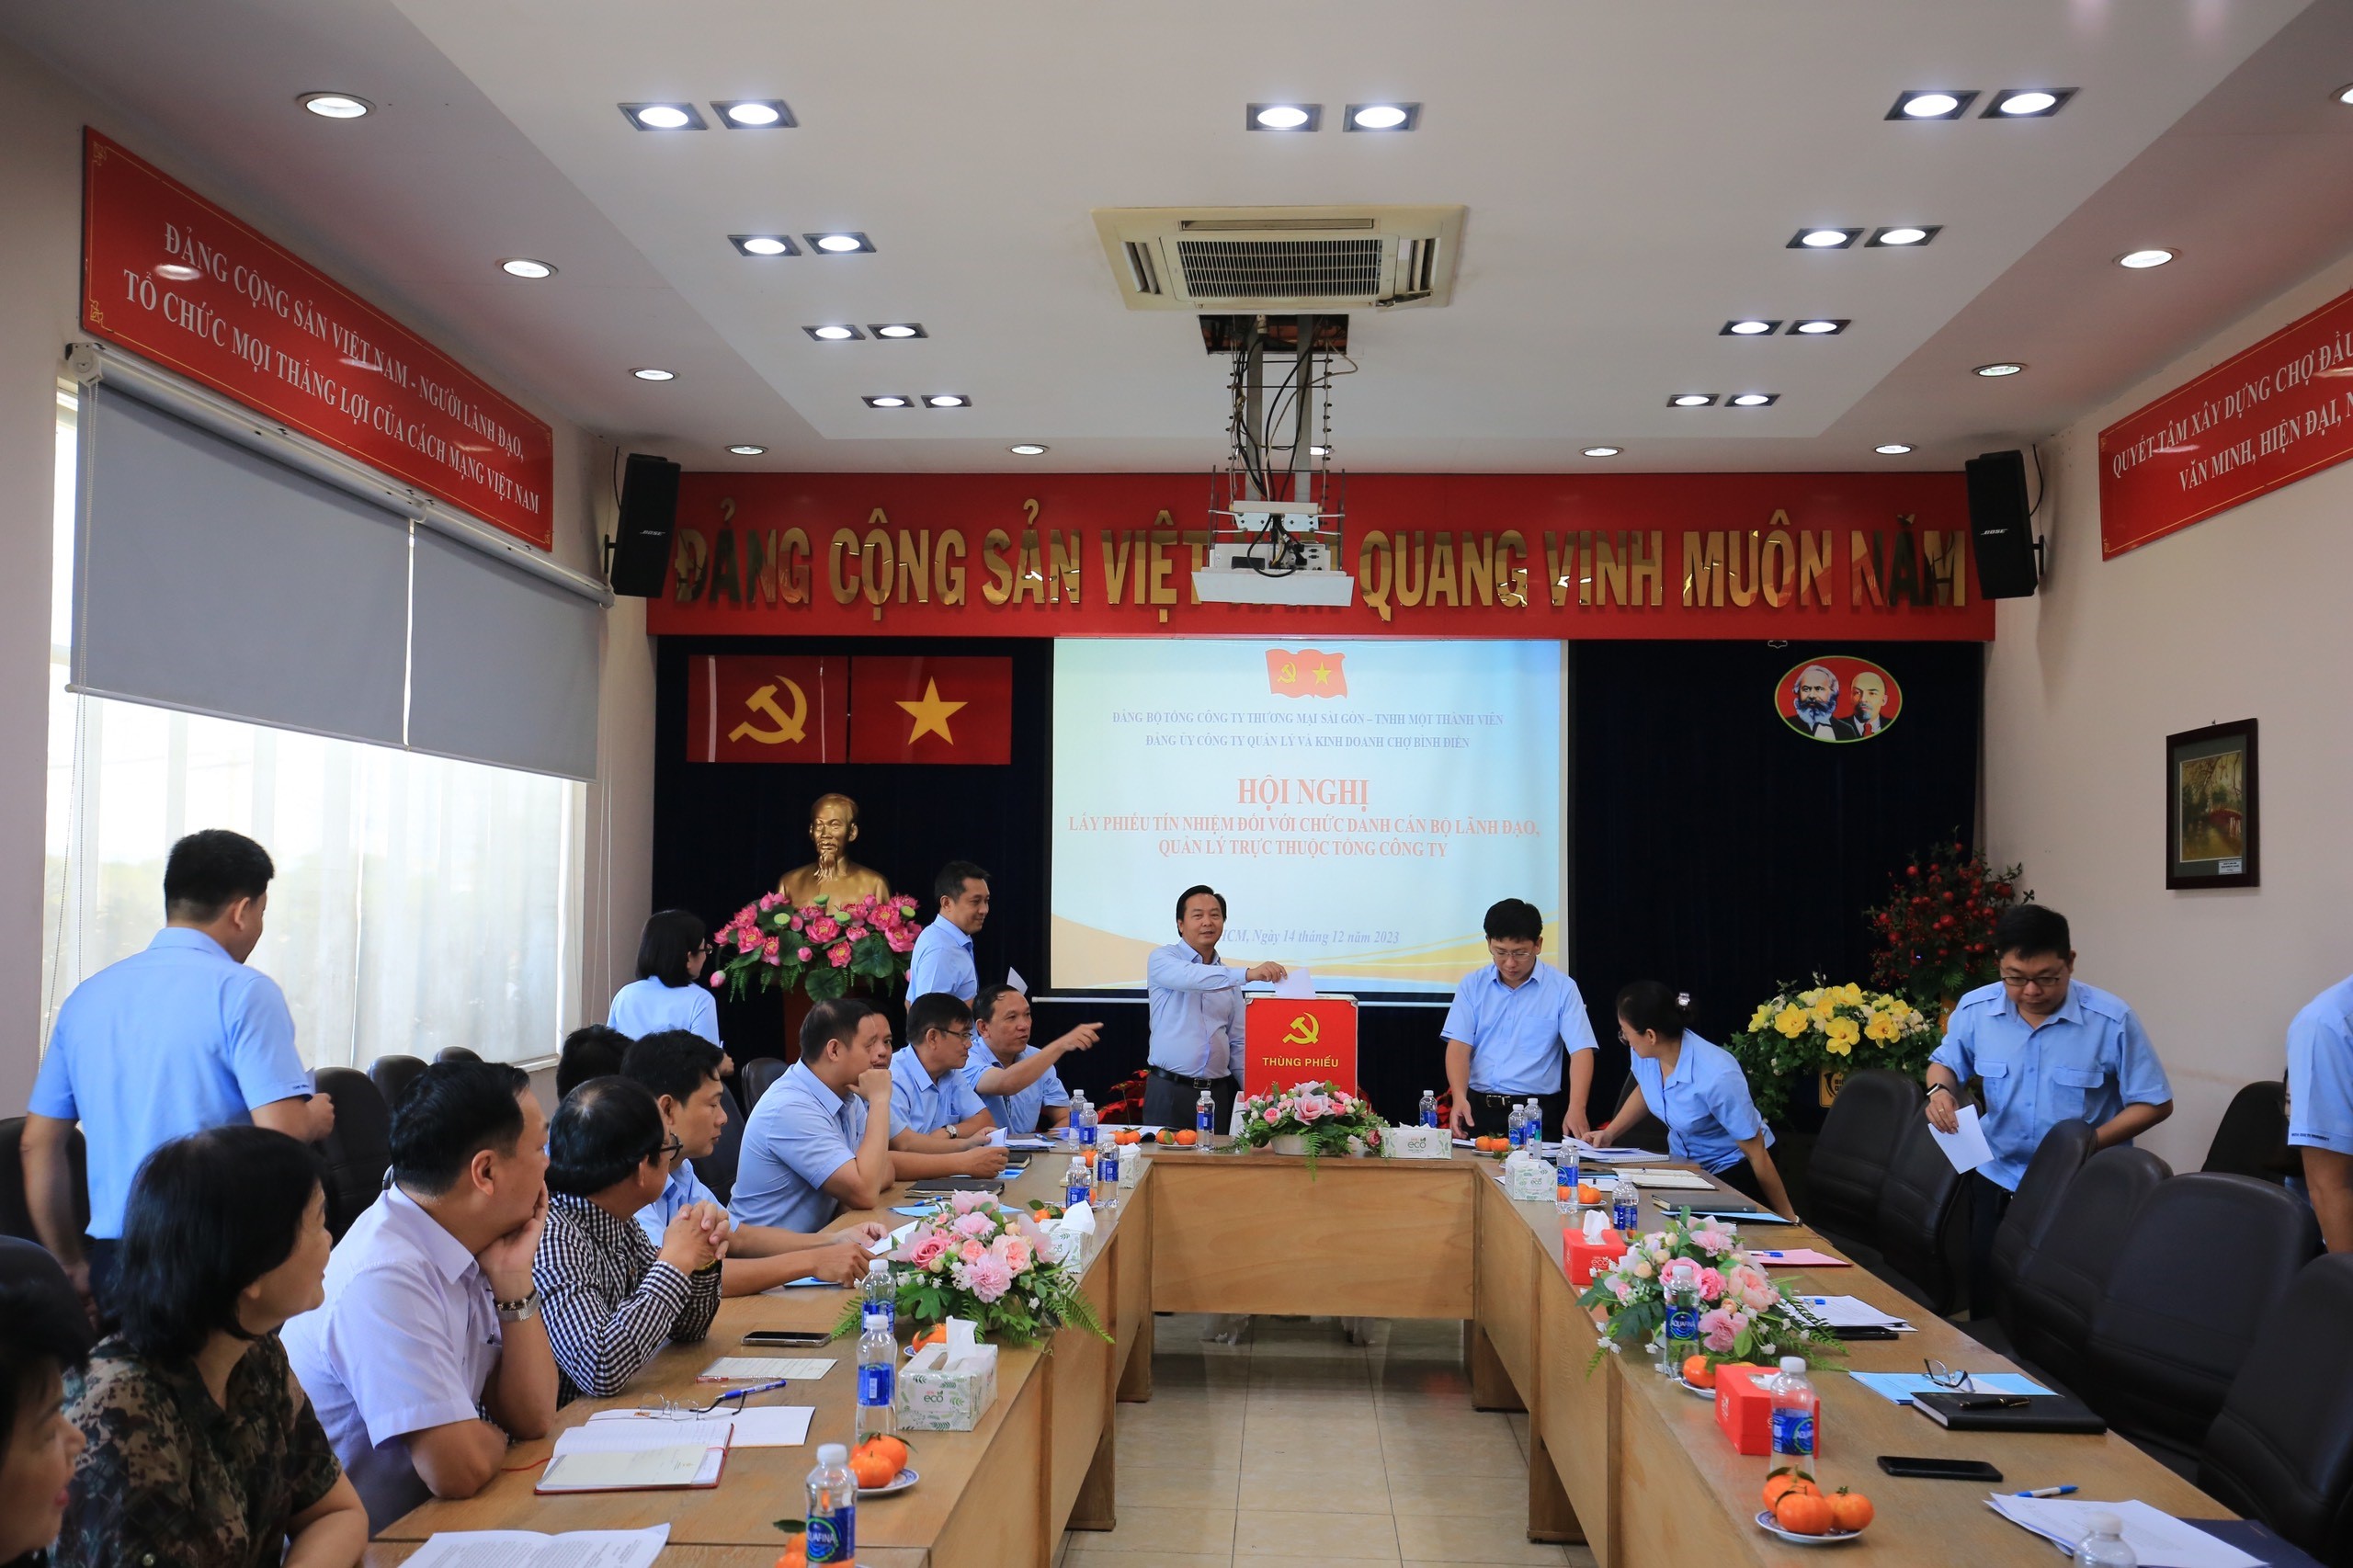 Đồng chí Phan Thành Tân – Đảng ủy viên Tổng Công ty, Bí thư Đảng ủy, Giám đốc Công ty Chợ Bình Điền có số phiếu tín nhiệm cao tuyệt đối